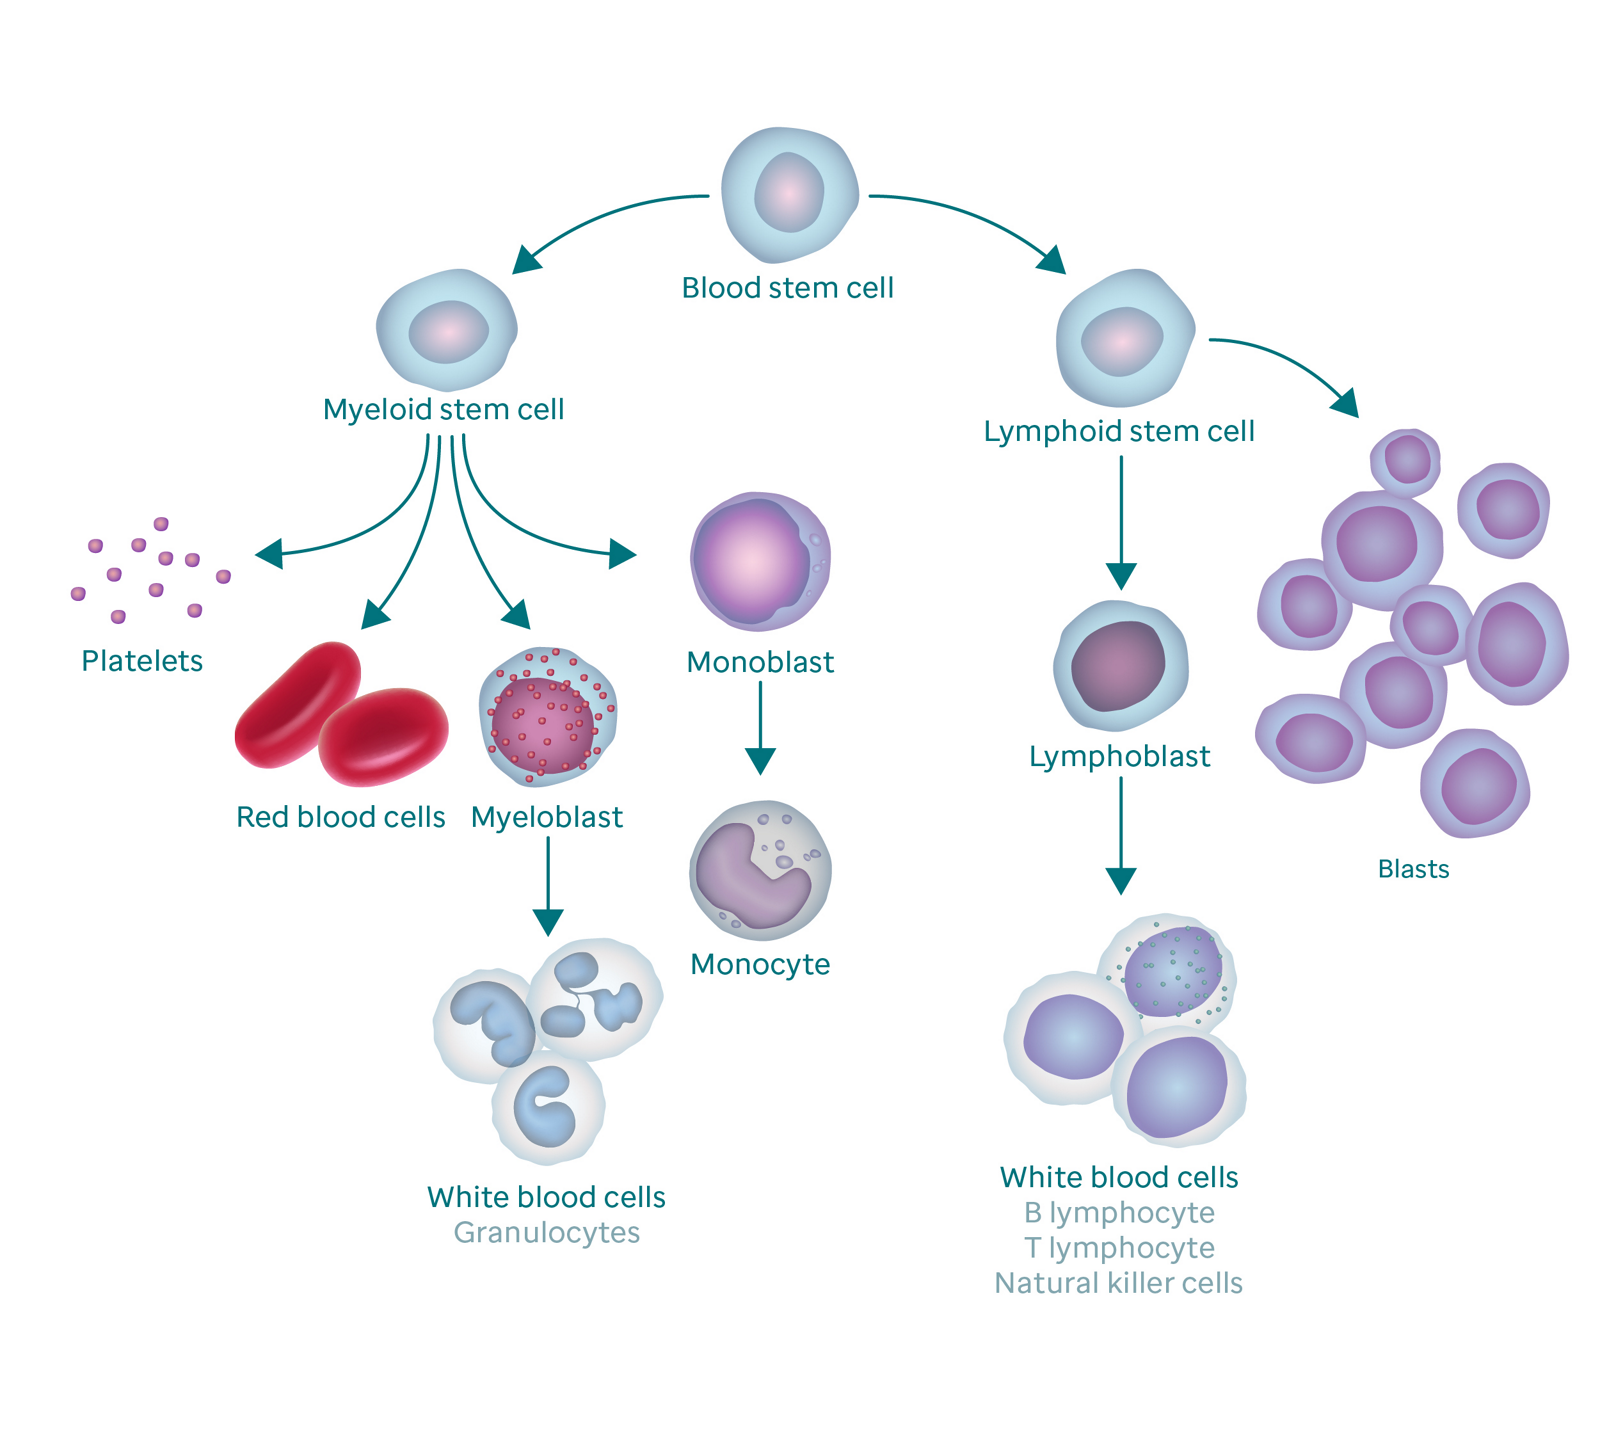 Grafika znázorňující proces tvorby krve a jeho výsledkem jsou blastické buňky.  Grafika začíná krevní kmenovou buňkou.  Vlevo se větví na myeloidní kmenovou buňku, která se větví na krevní destičky, červené krvinky, myeloblast a monoblast.  Myeloblast se mění v bílé krvinky (také nazývané granulocyty) a monoblast se mění v monocyt.  Pravá větev krevní kmenové buňky jde do lymfoidní kmenové buňky, která se větví na lymfoblasty (které se mění na bílé krvinky) a blastové buňky.